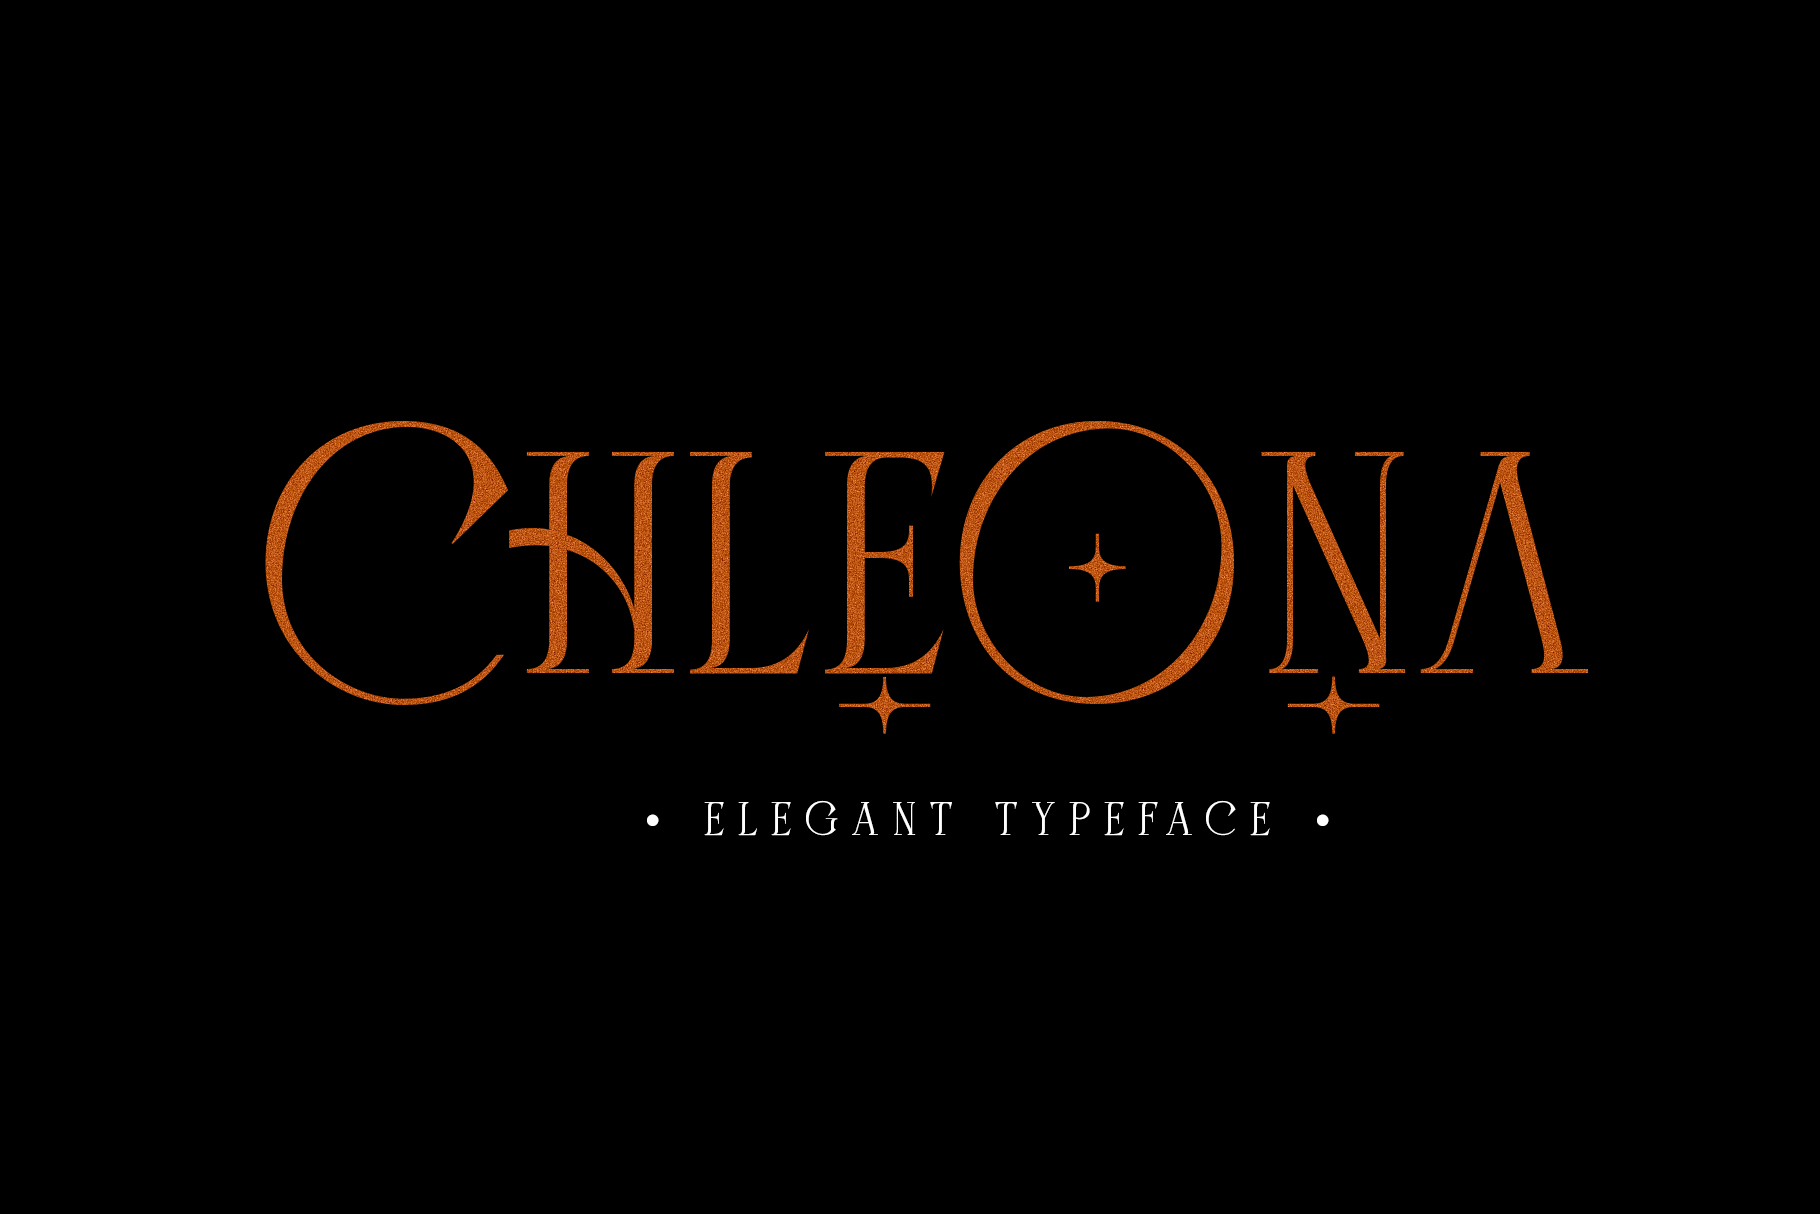 Chleona